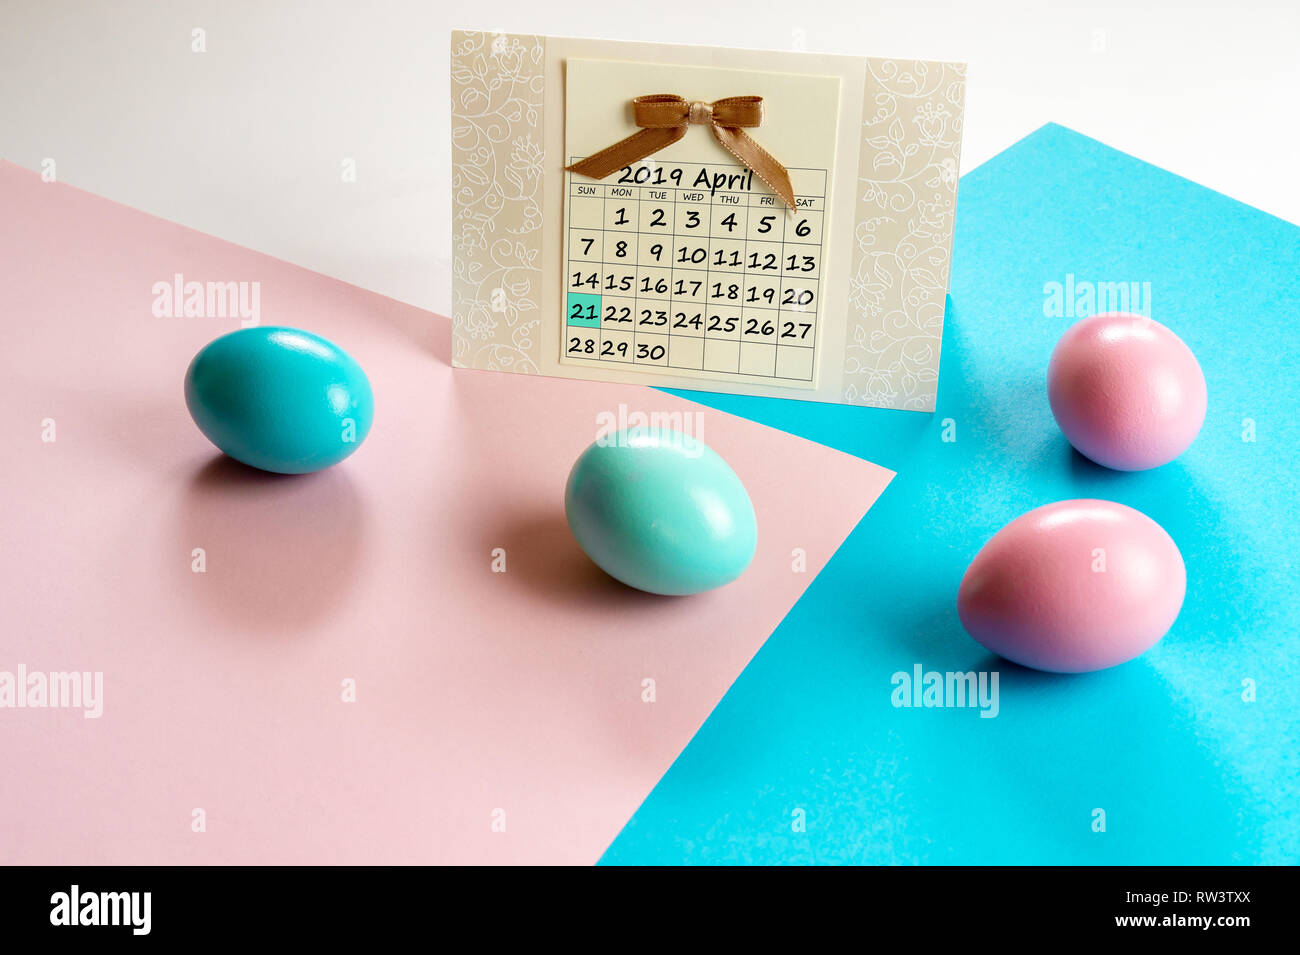 Calendrier 2019 Avril Joyeuses Pâques avec des œufs de Pâques colorés dans une attente de blocs colorés et concept de Pâques Banque D'Images